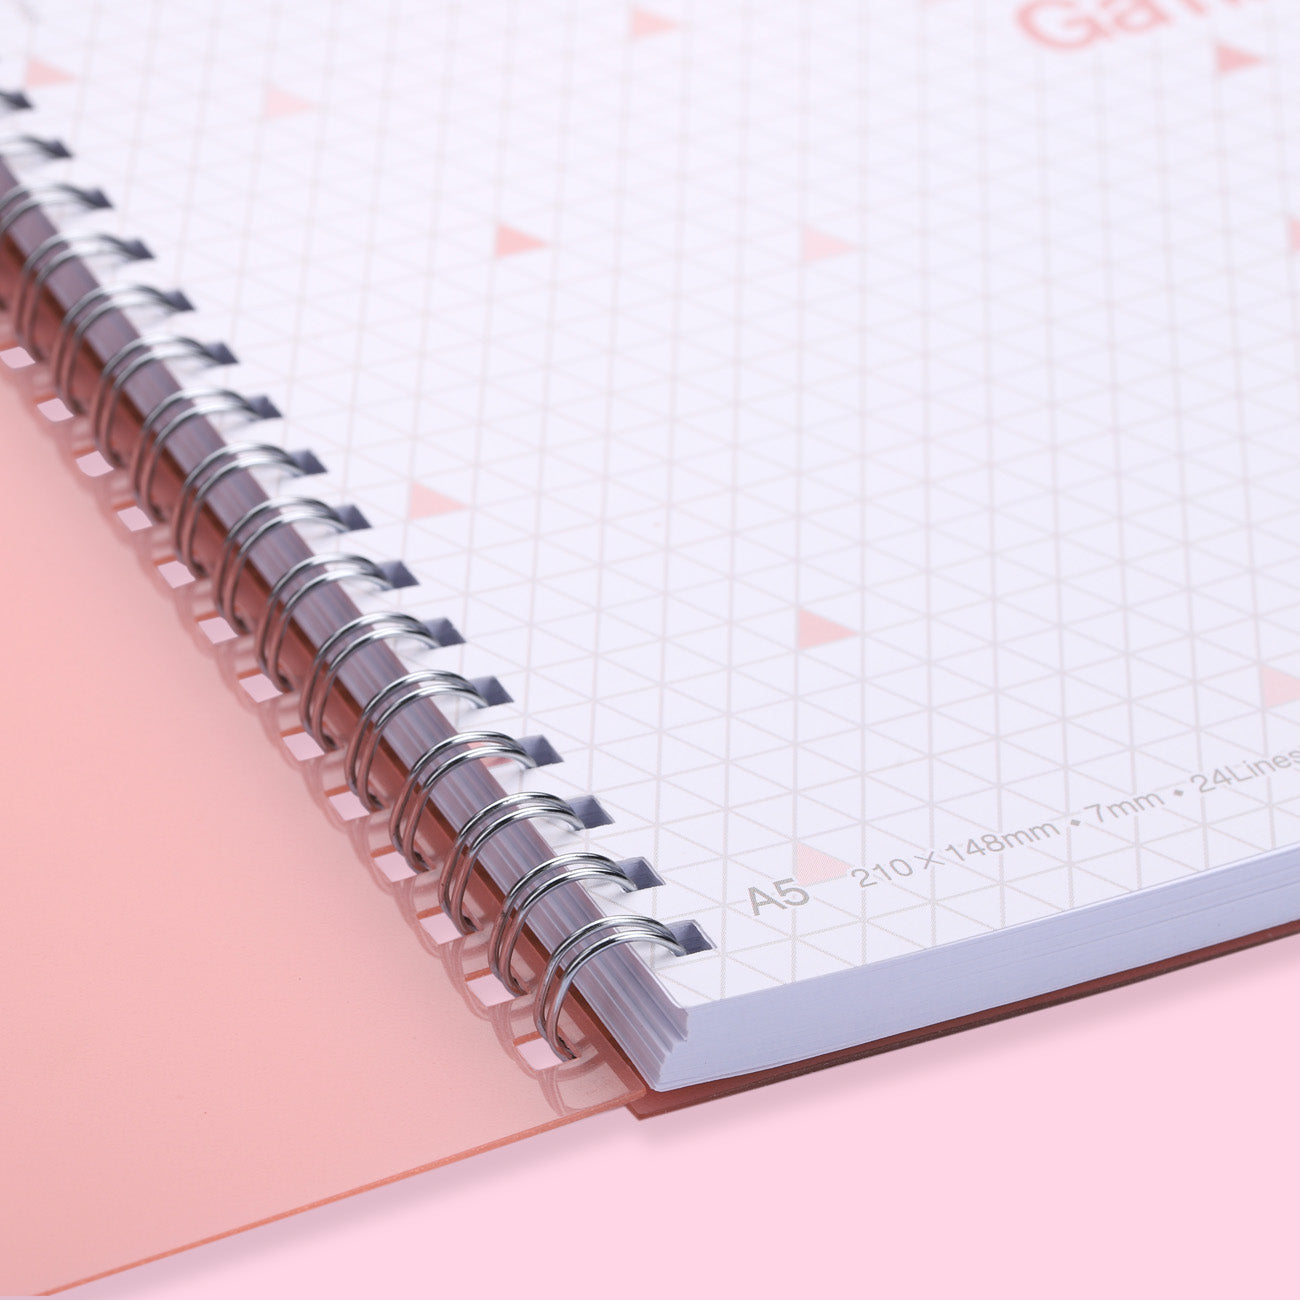 Kokuyo Gambol Color Ring Notebook - A5 - 7 mm Ruled - Pink